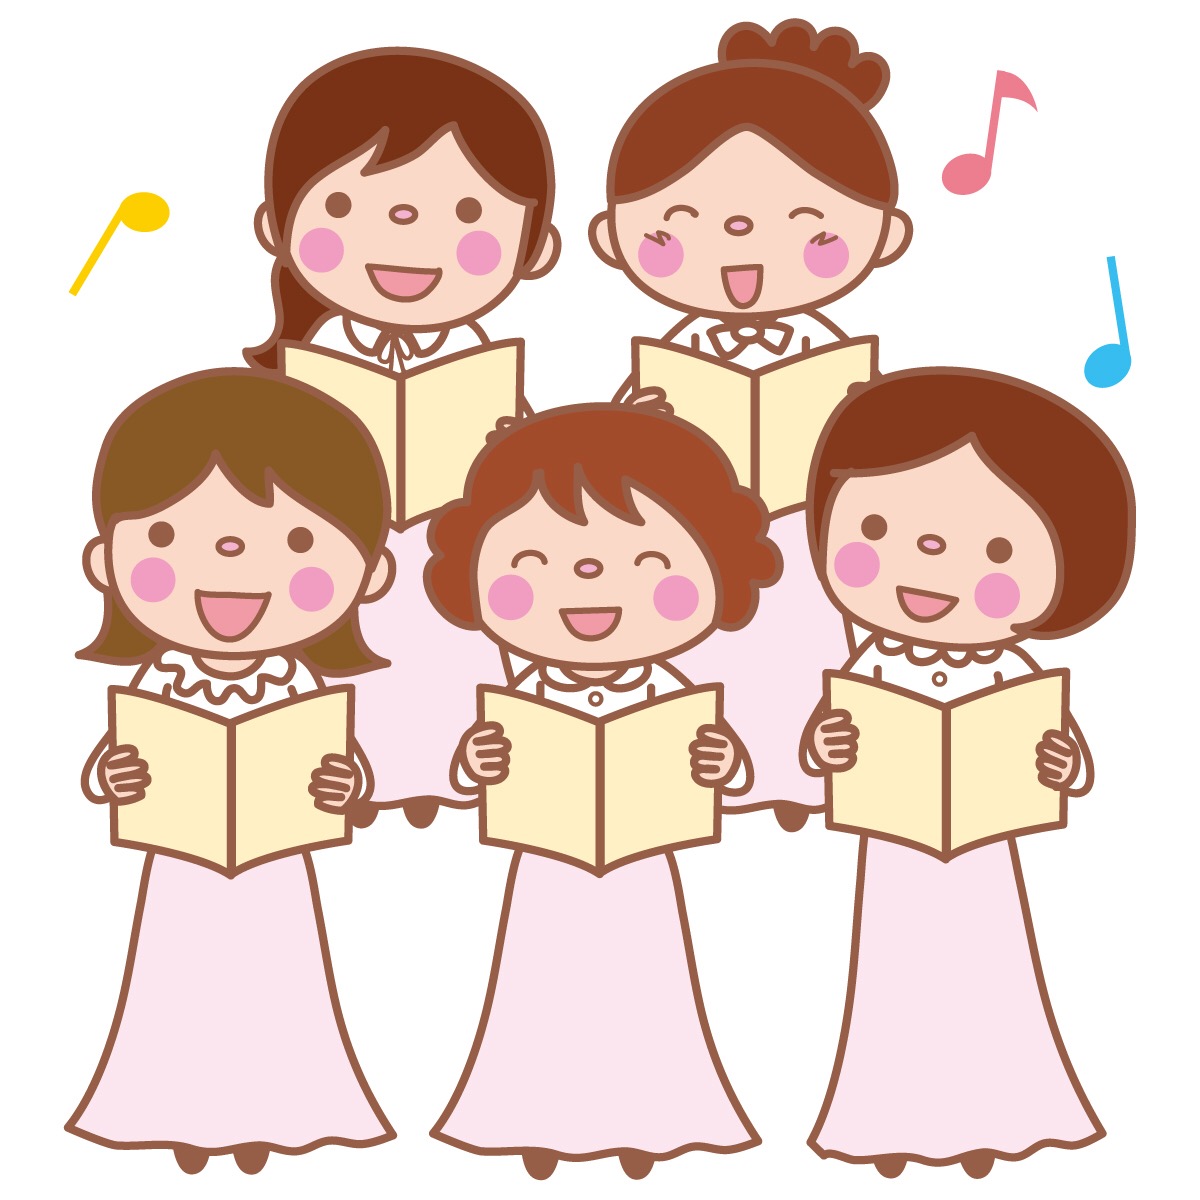 2月10日は東近江市の近江商人博物館で「ロビーコンサート春よ来い♪」が開催！ひな人形めぐりが開催中の五個荘散策と合わせて楽しもう♪